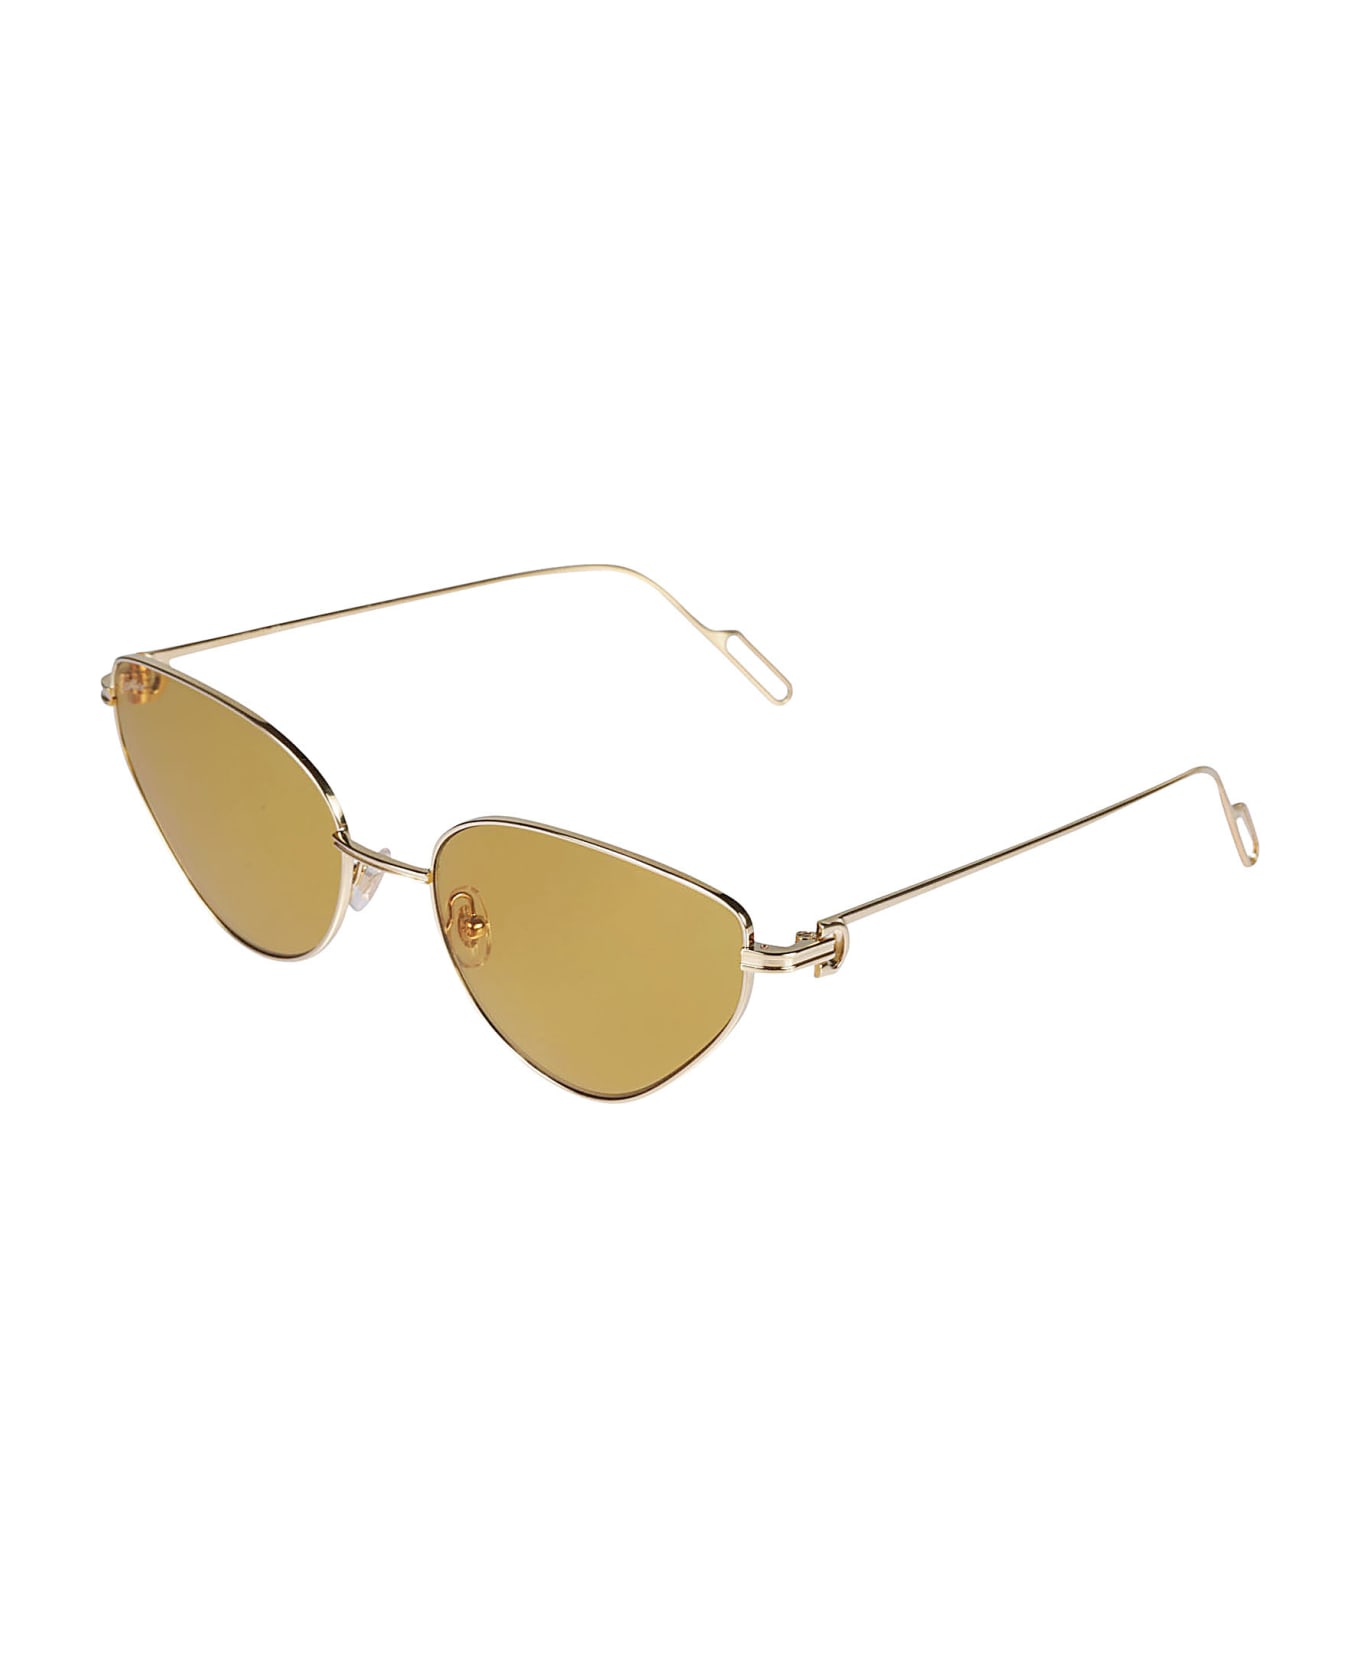 Cartier Eyewear Premiere De Cartier Sunglasses - Gold